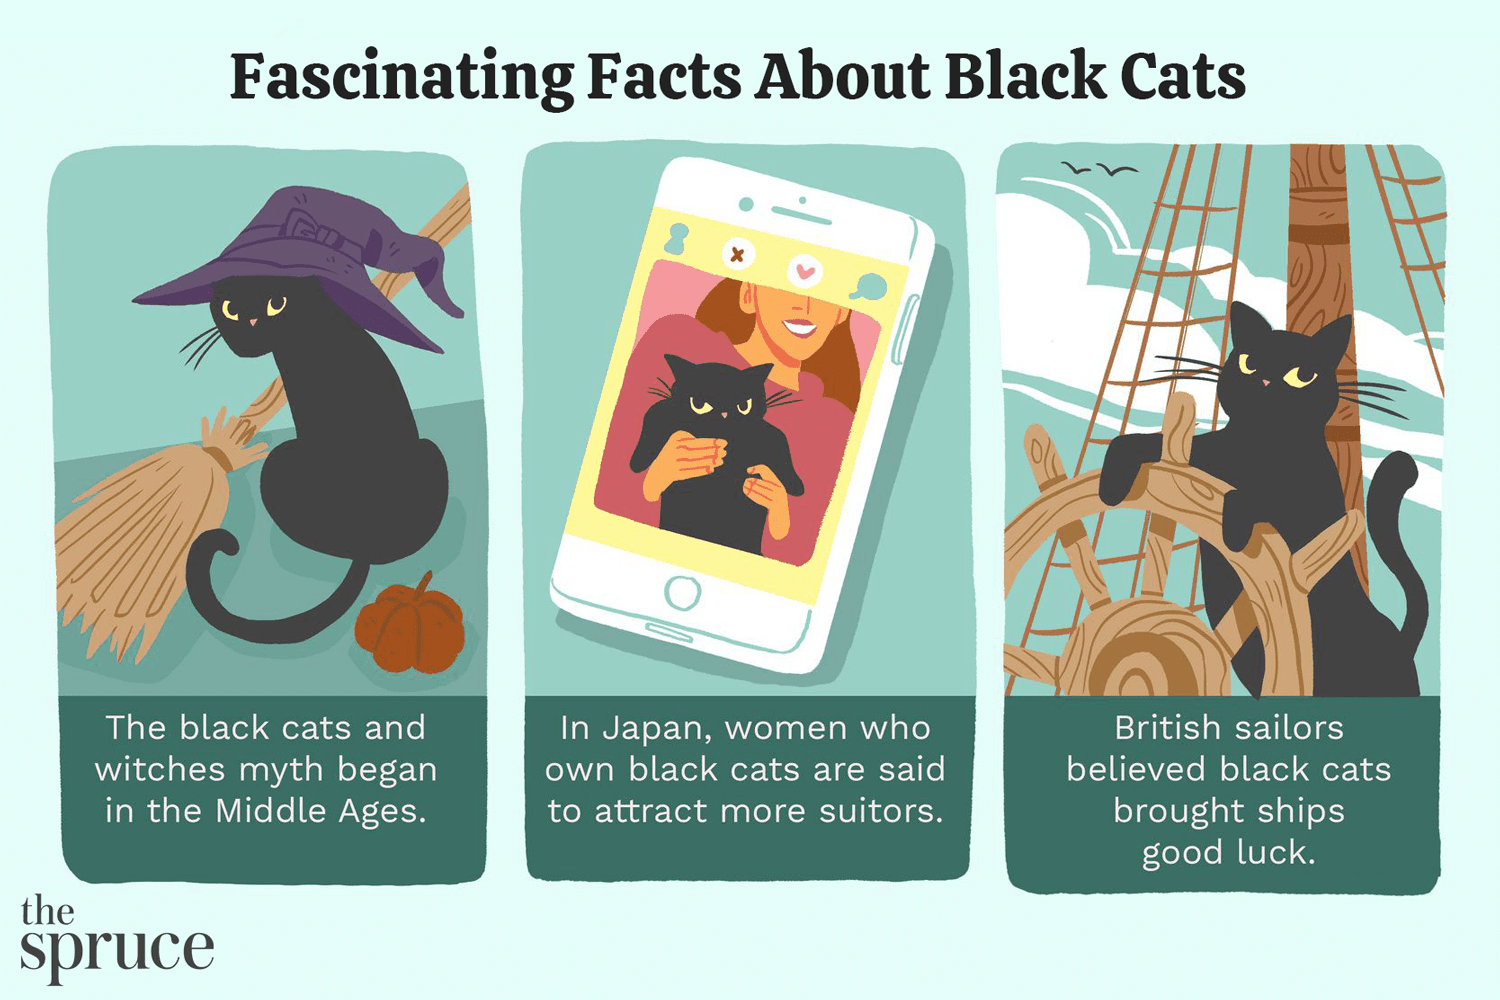 5 Pawsitively Fascinující fakta o černých kočkách